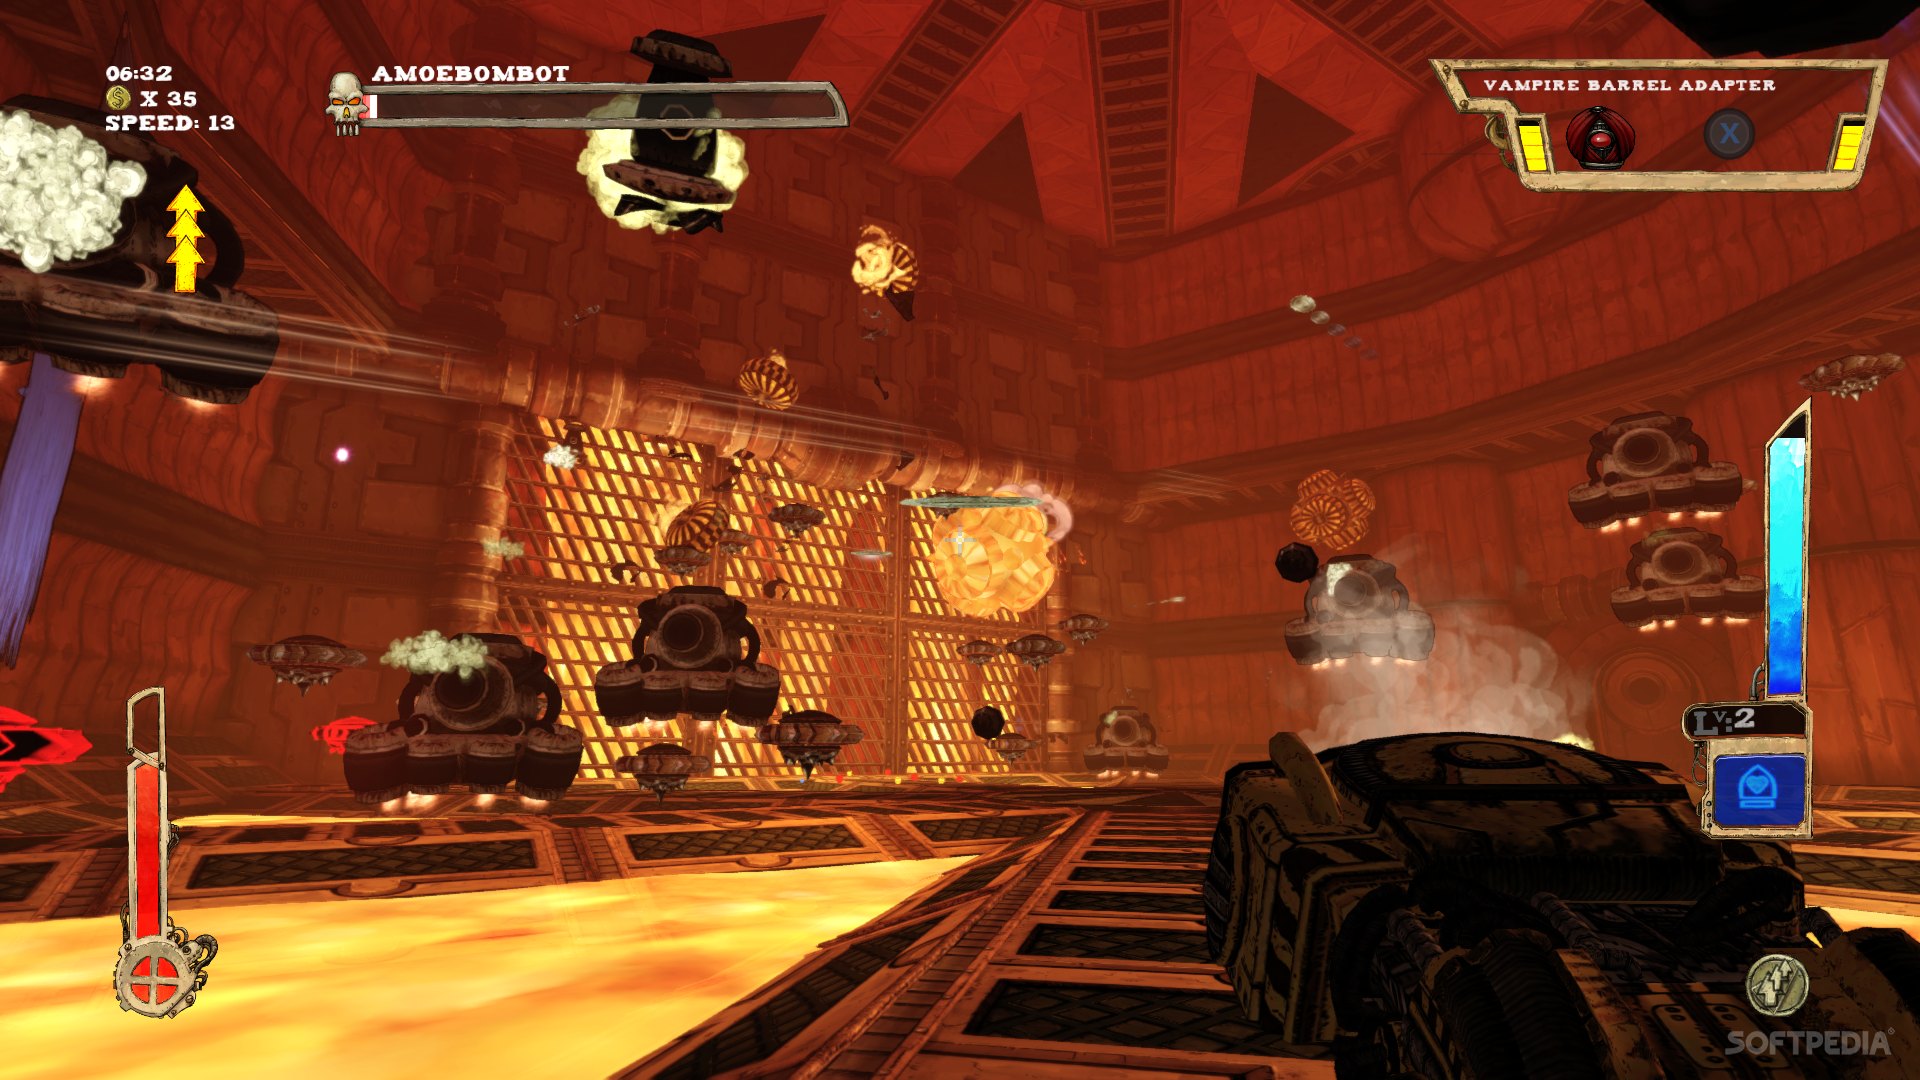 Jogo Novo Tower Of Guns Special Edition Para Xbox One